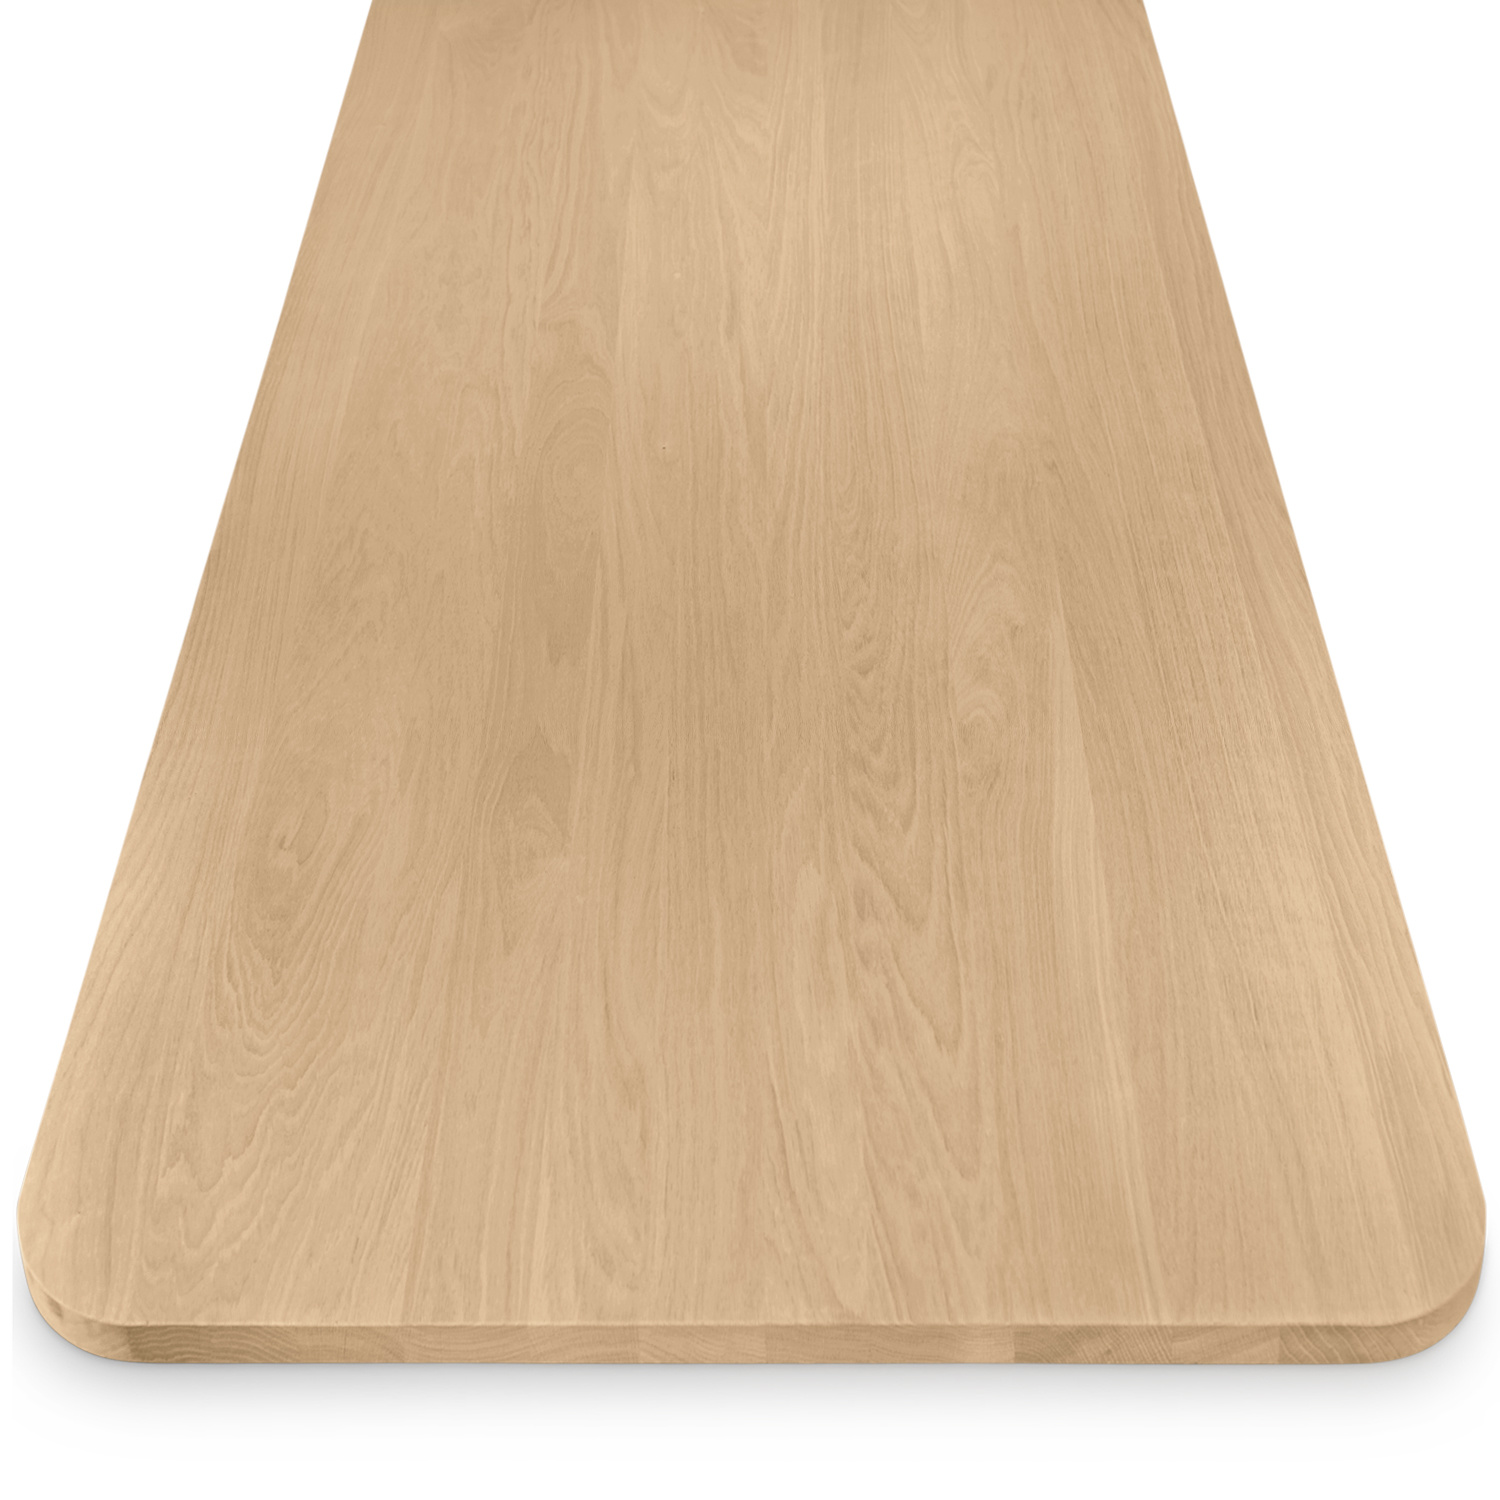  Eiken tafelblad met ronde hoeken - op maat - 3 cm dik (1-laag) - foutvrij Europees eikenhout - verlijmd kd 8-12% - 50-120x50-260 cm - Afgeronde hoeken radius 5, 8, of 10 cm